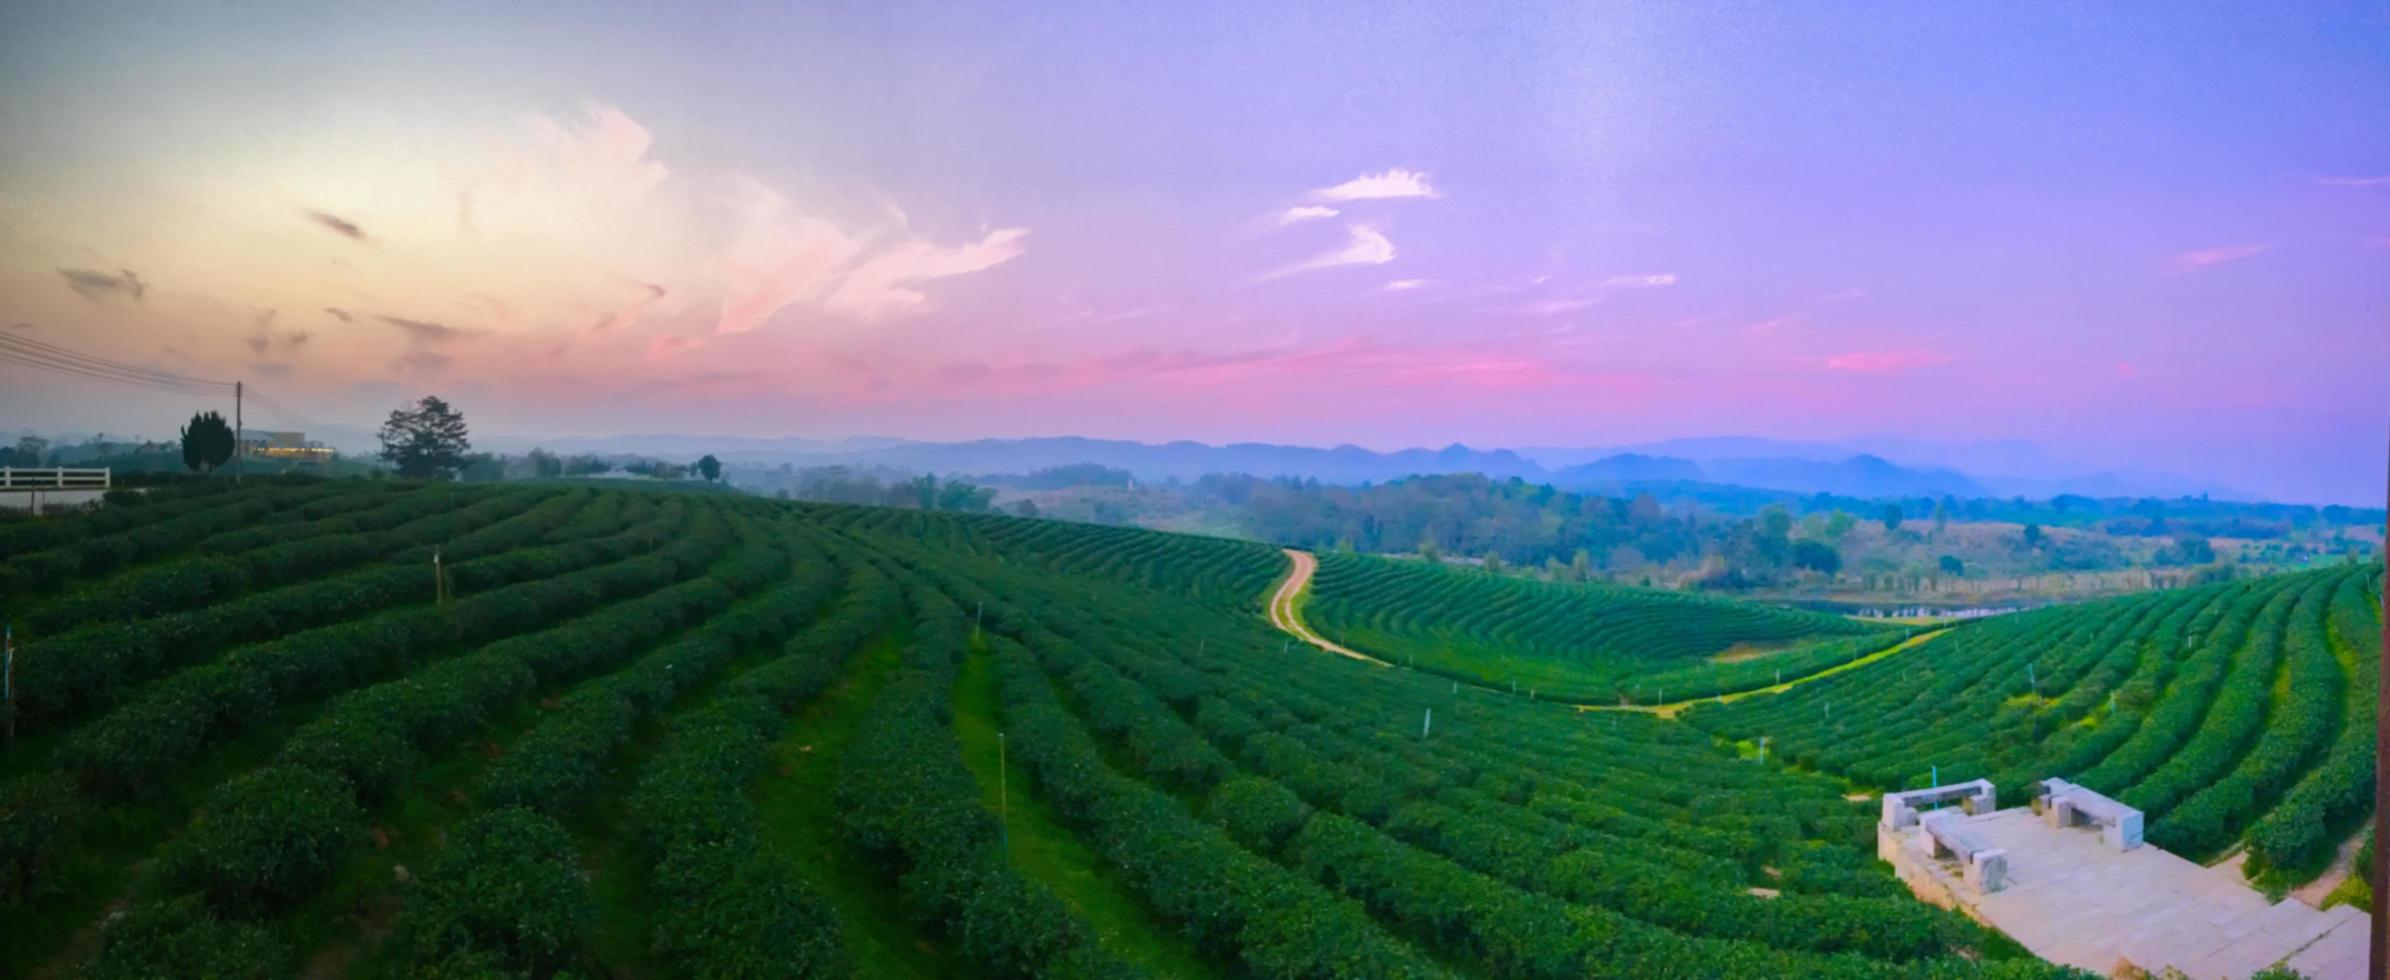 paesaggio della valle delle piantagioni di tè al tramonto. foto